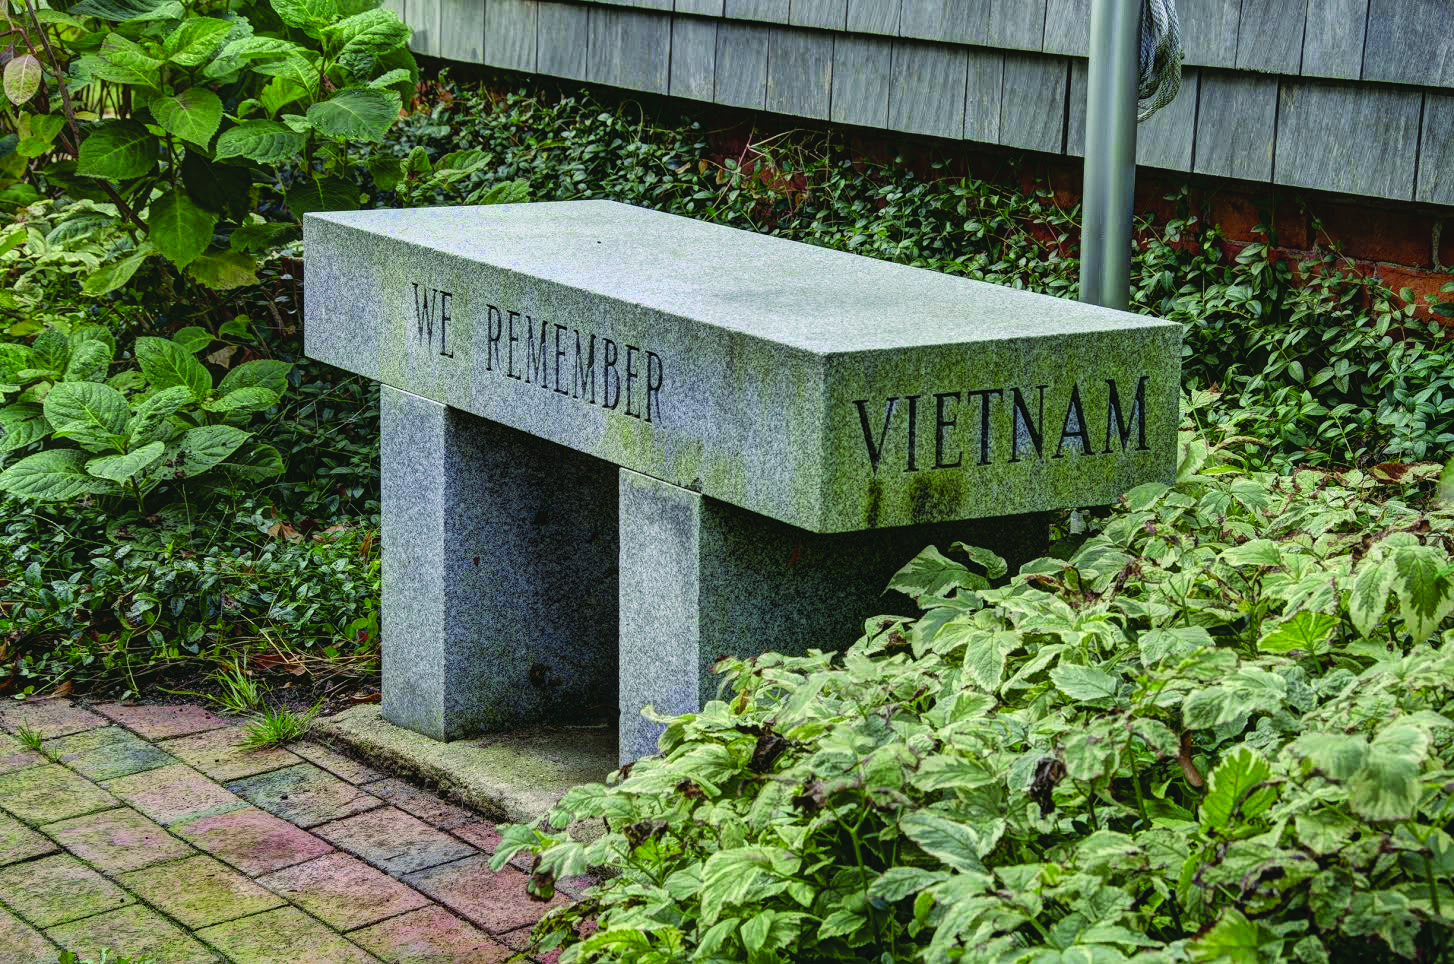  Vietnam Memorial 